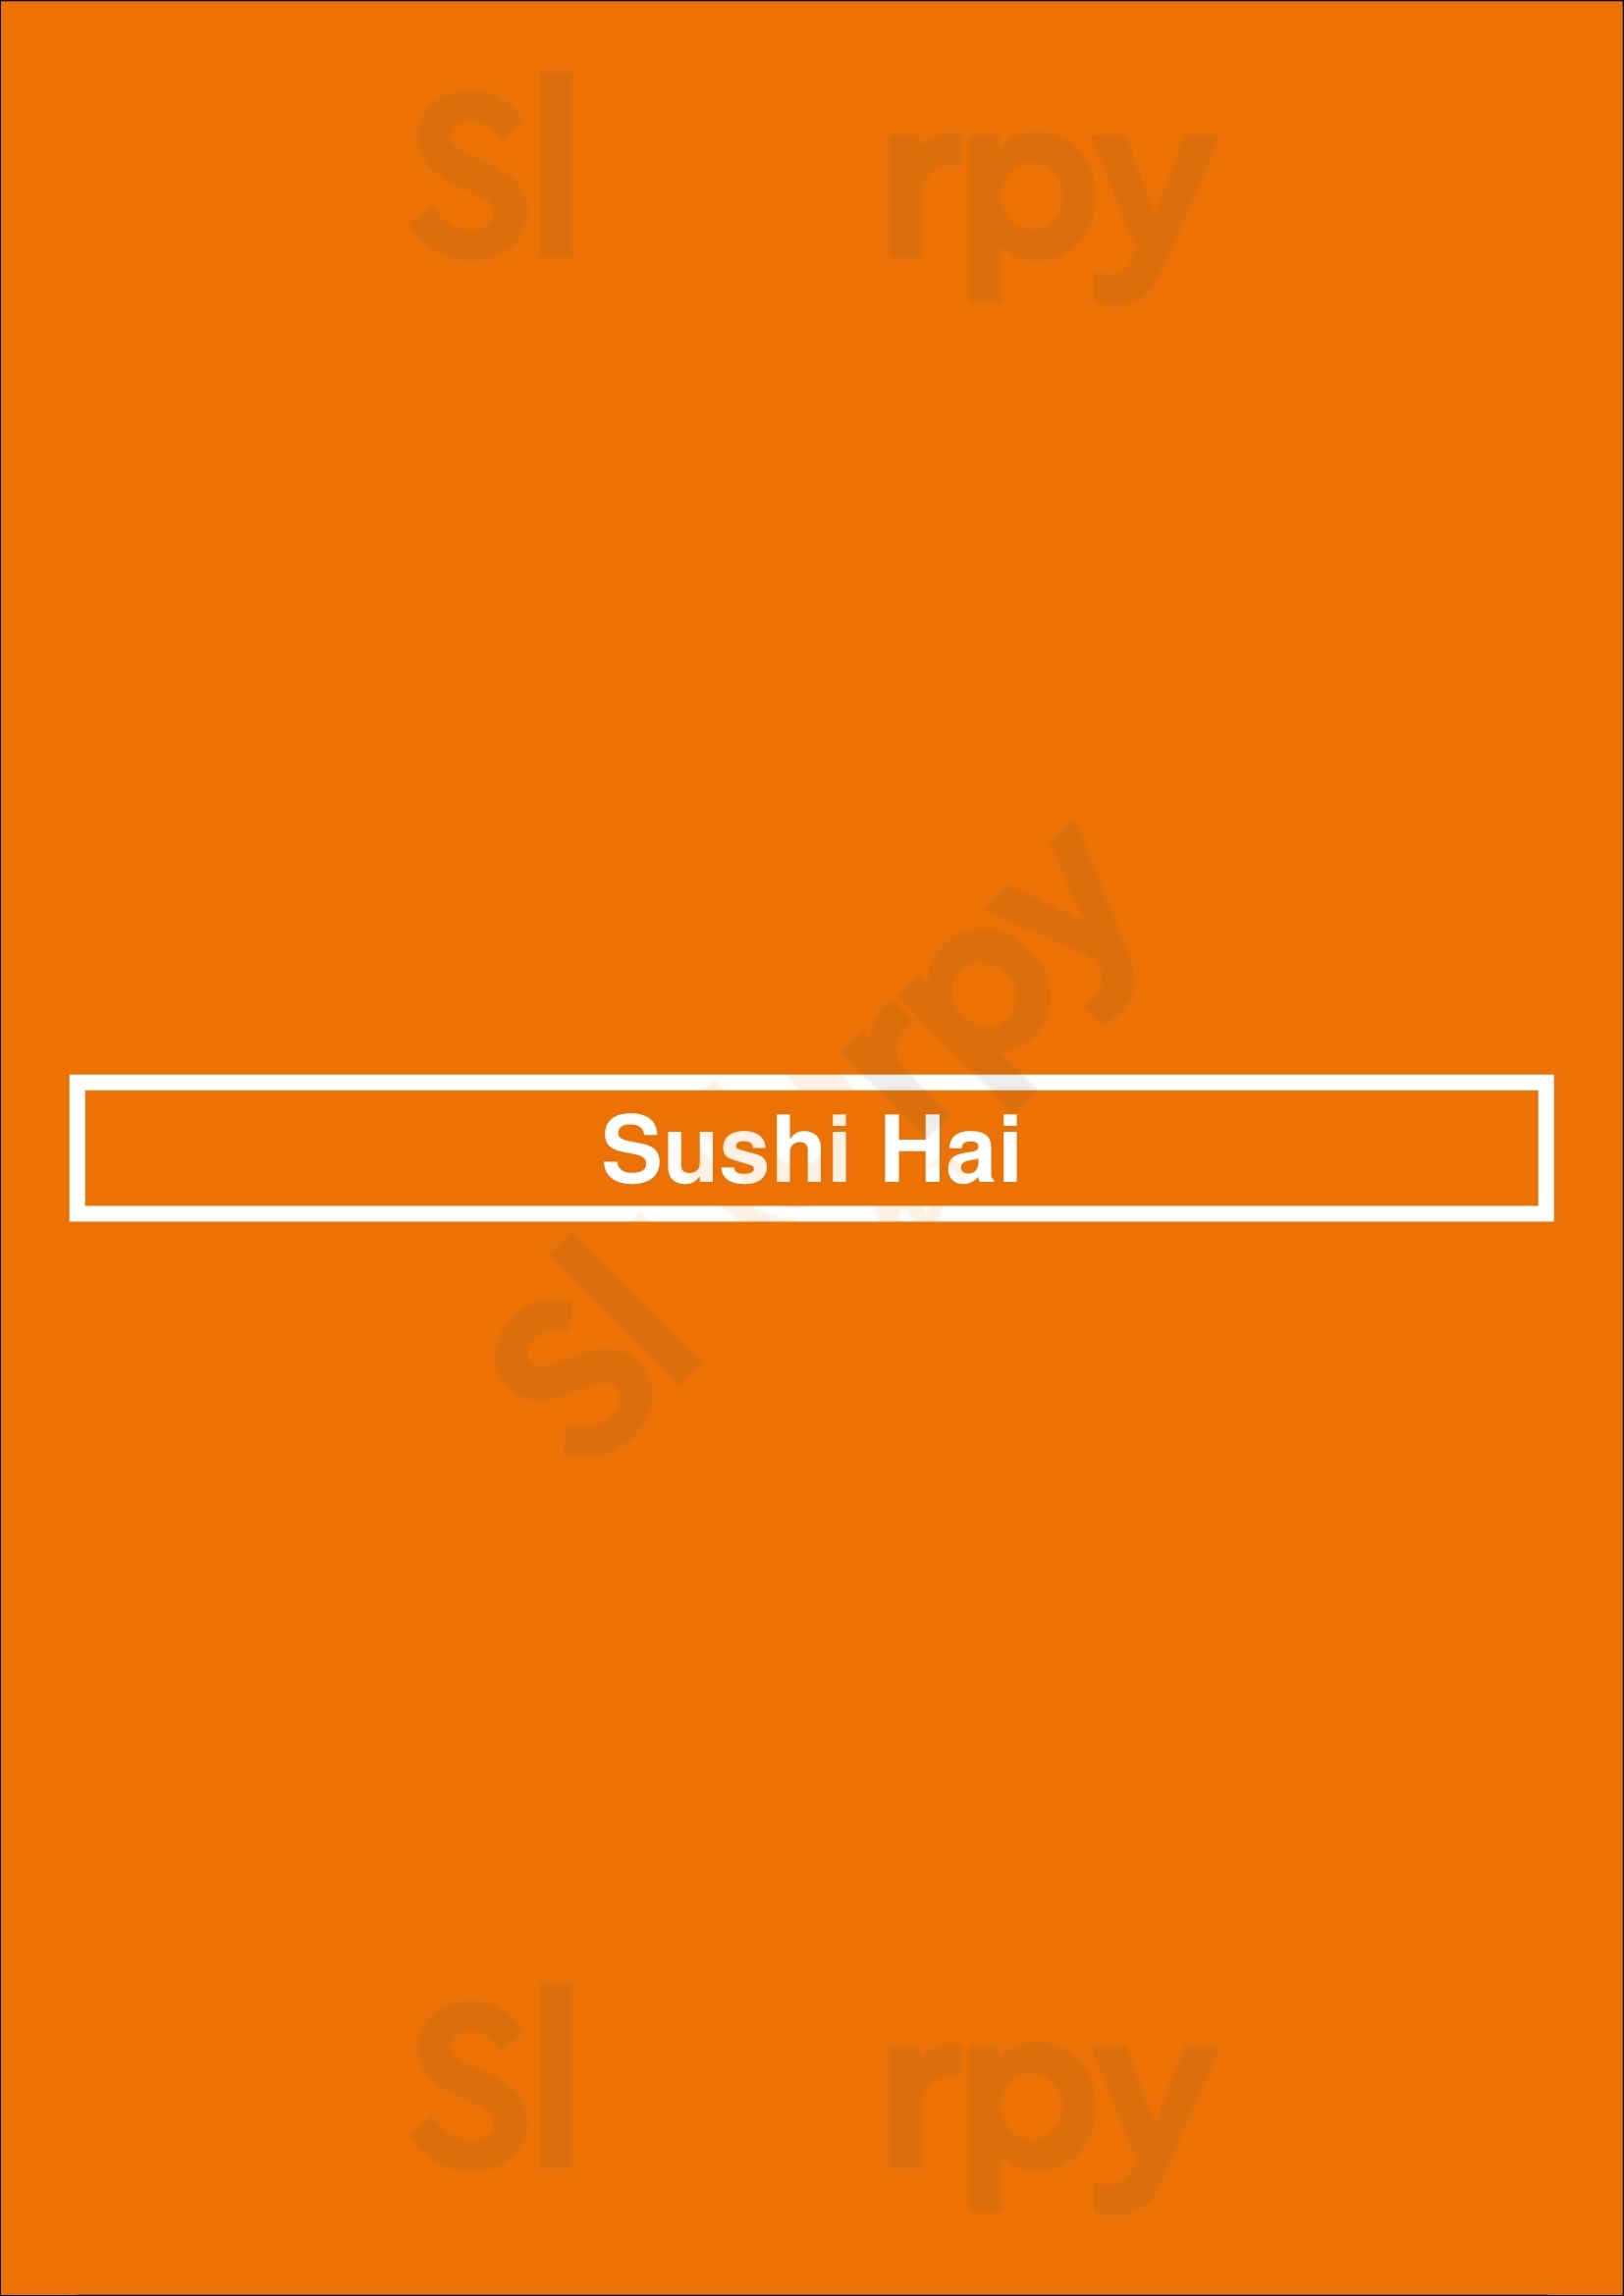 Sushi Hai Denver Menu - 1